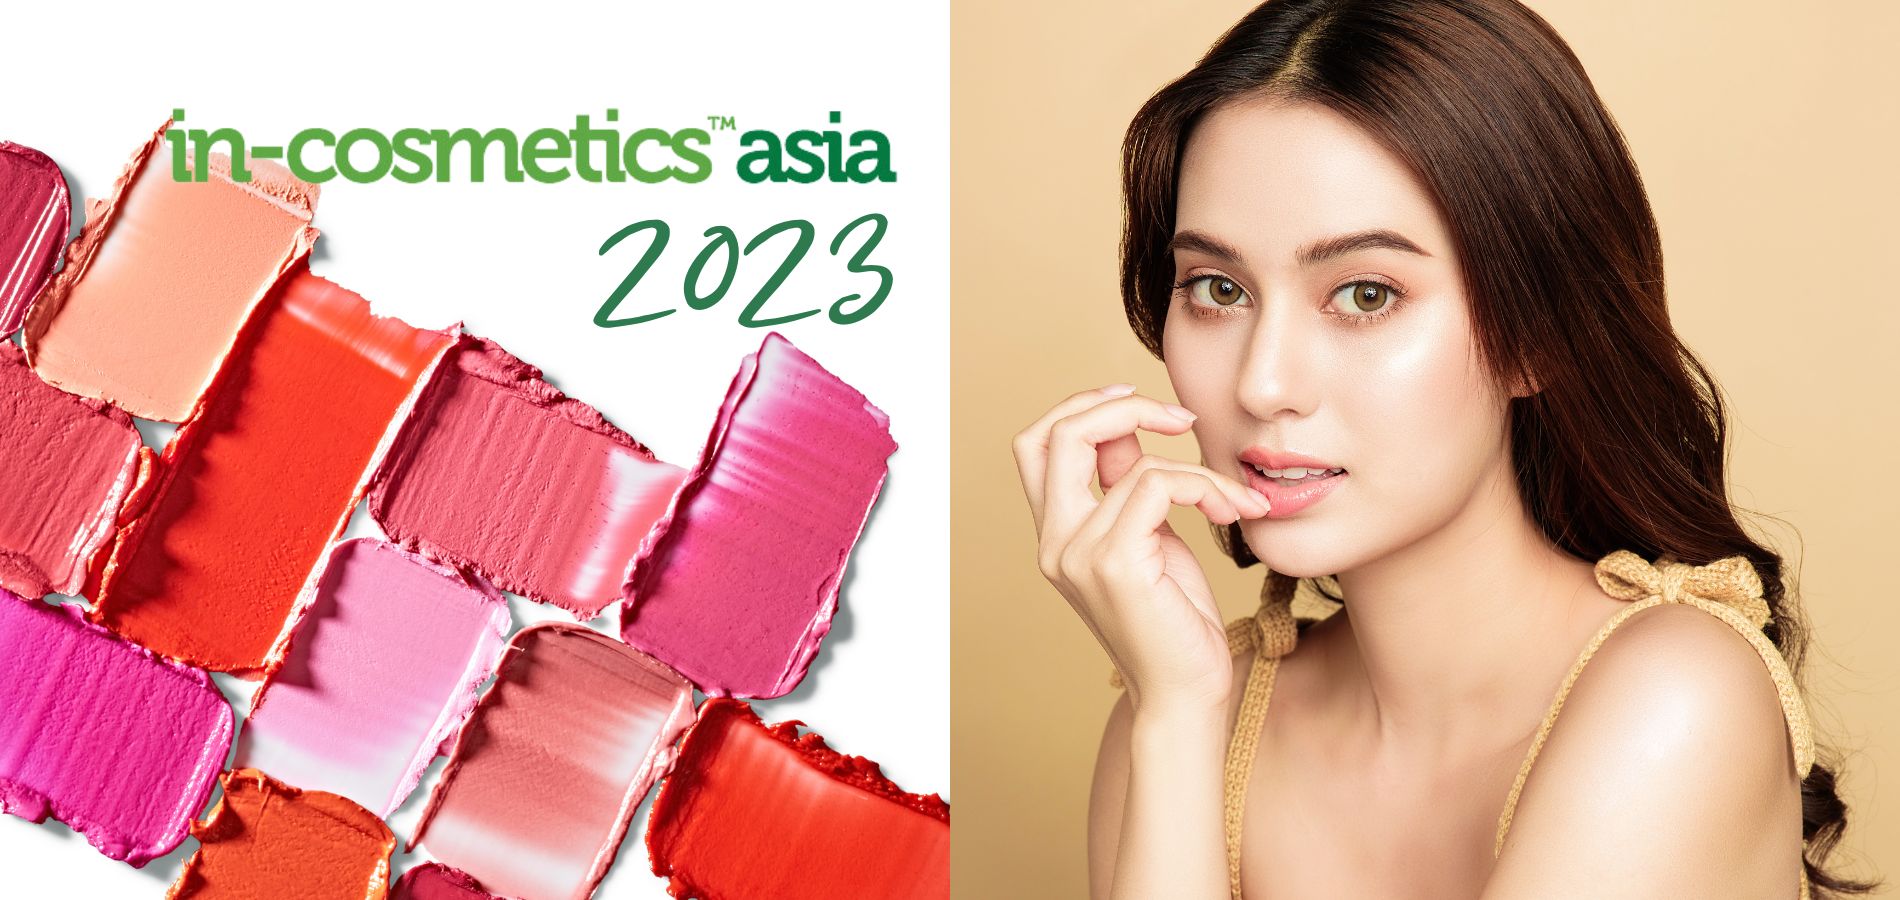 Wyróżniony obraz na stronie internetowej In-Cosmetics Asia 2023